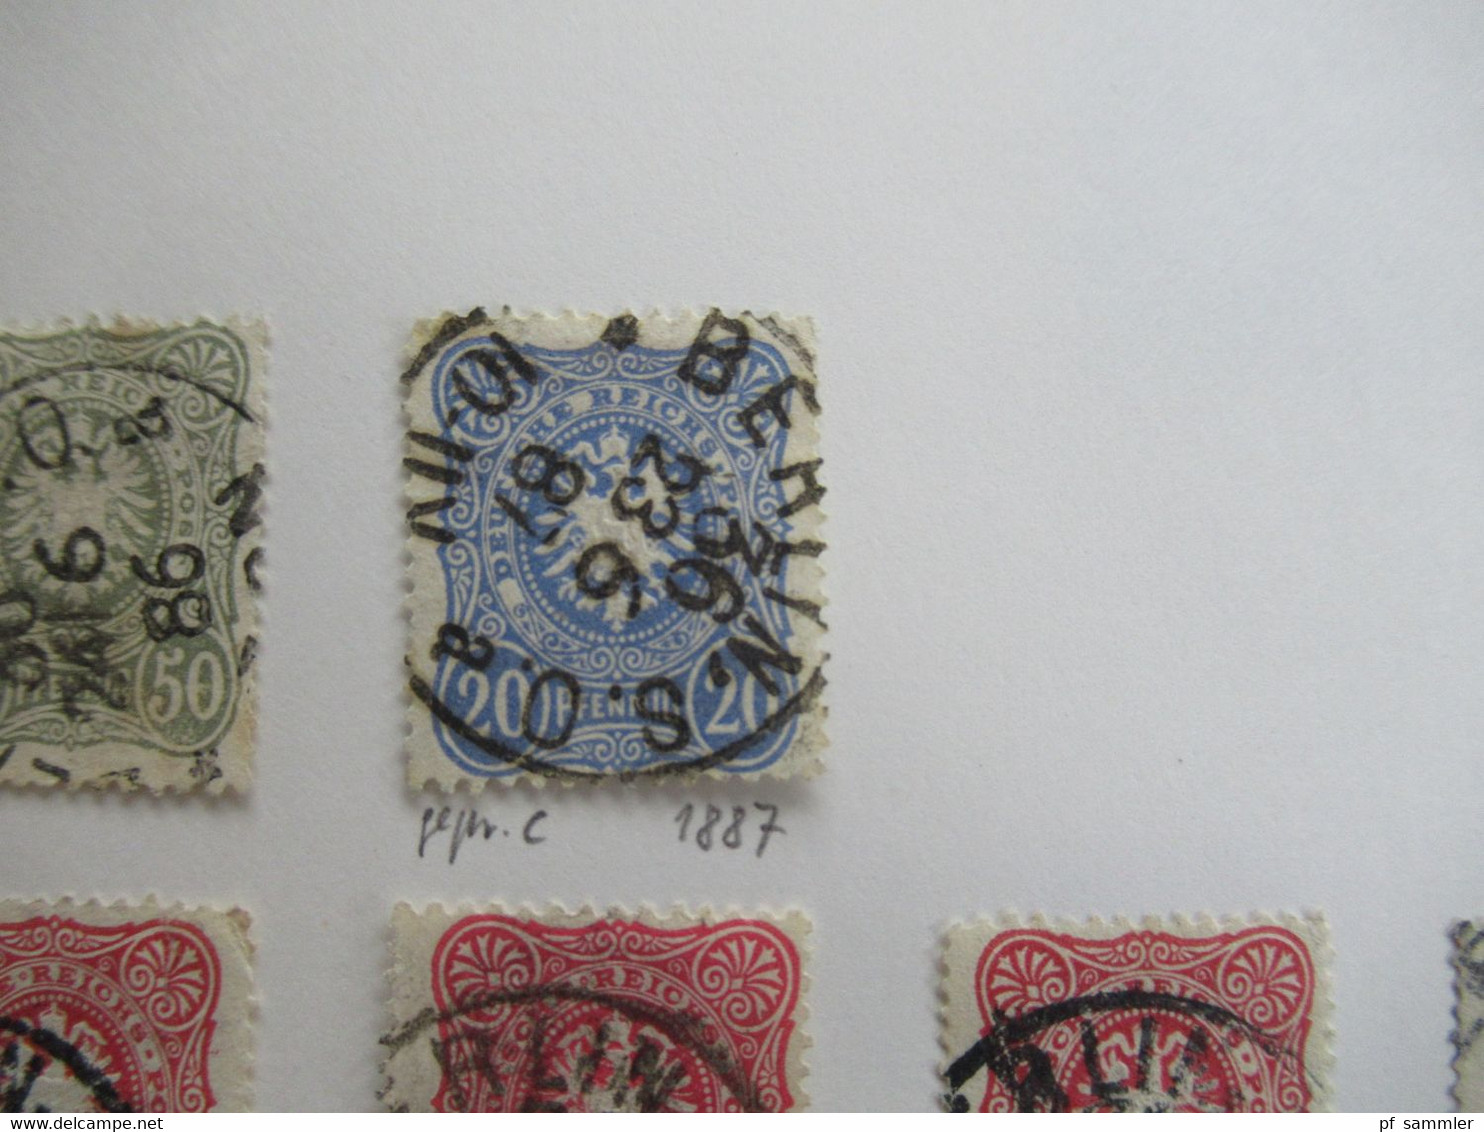 Spezial Slg. Berliner Postämter 31 - 54 / Stempelsammlung ab Brustschild mit tollen Stücken! Auch Einheiten Pfennig usw.